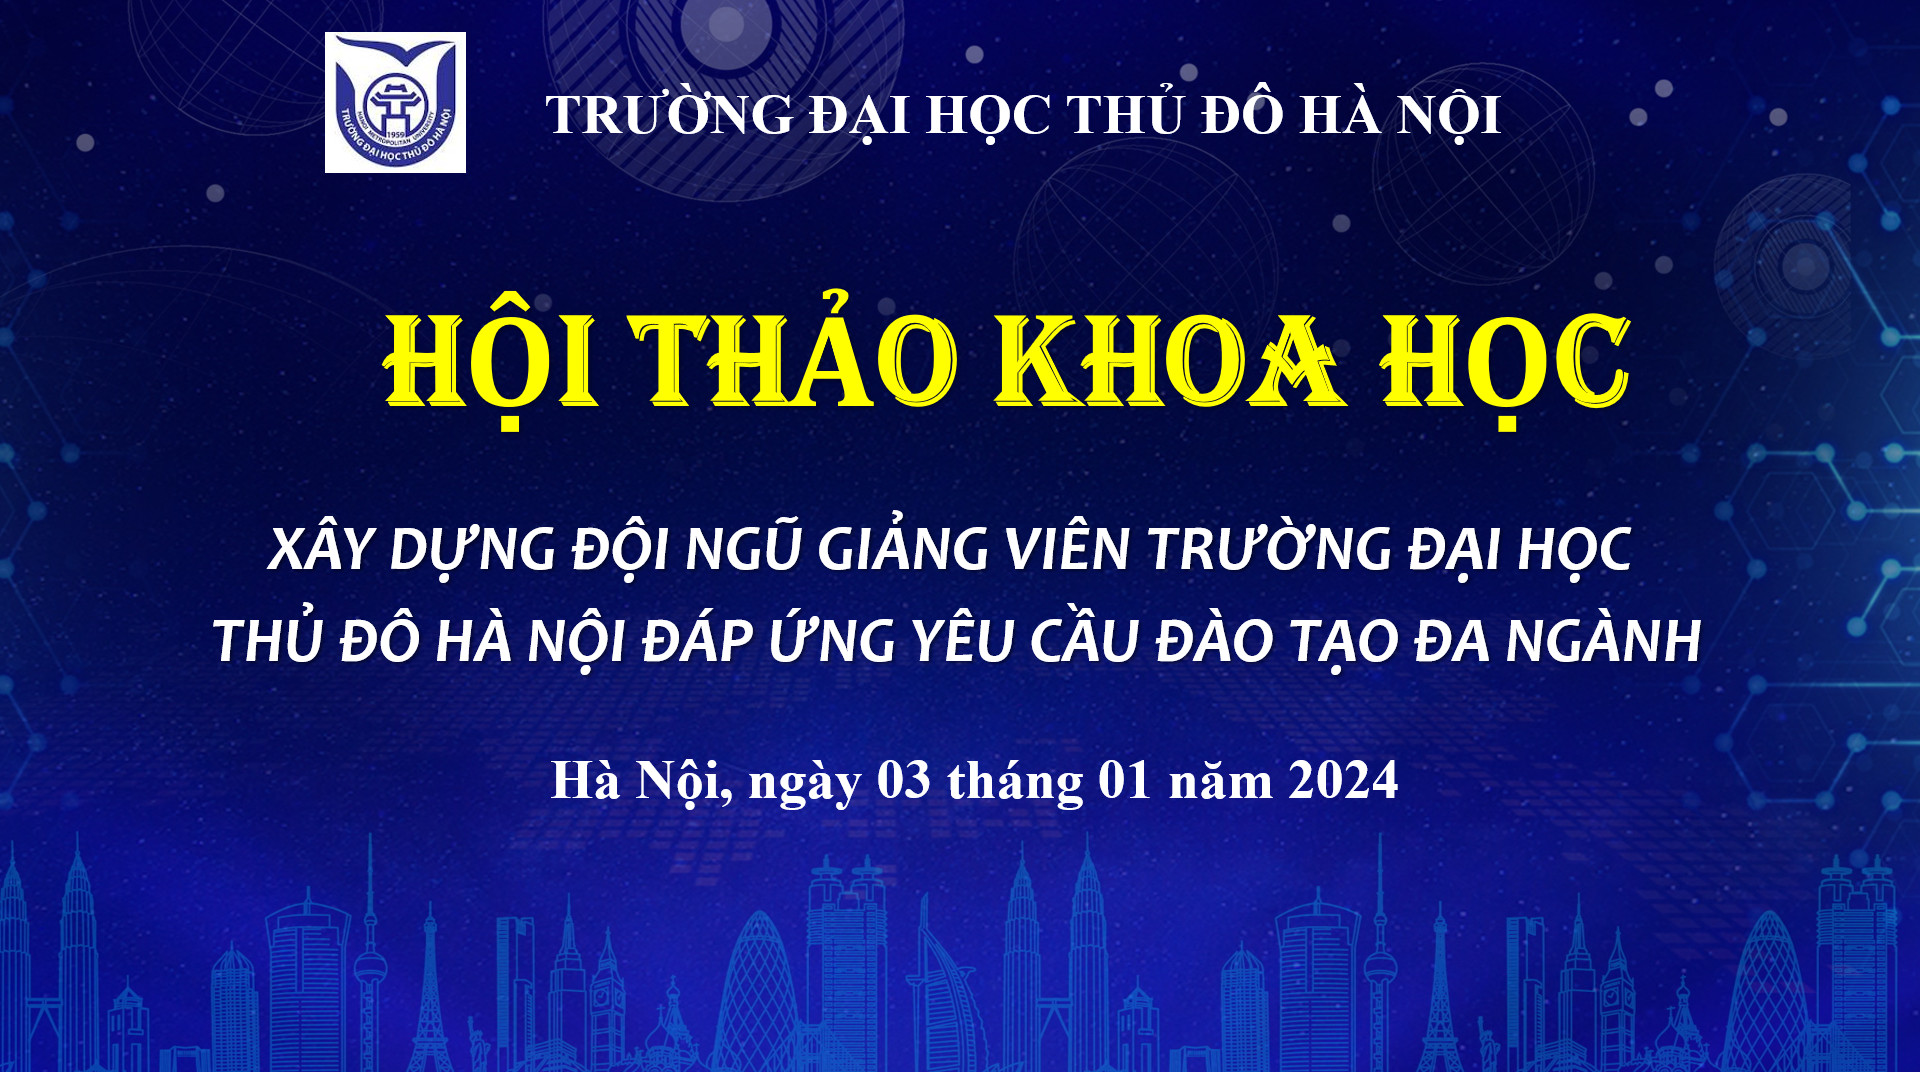 Thông tin về Hội thảo khoa học: “Xây dựng đội ngũ giảng viên Trường Đại học Thủ đô Hà Nội đáp ứng  yêu cầu đào tạo đa ngành”